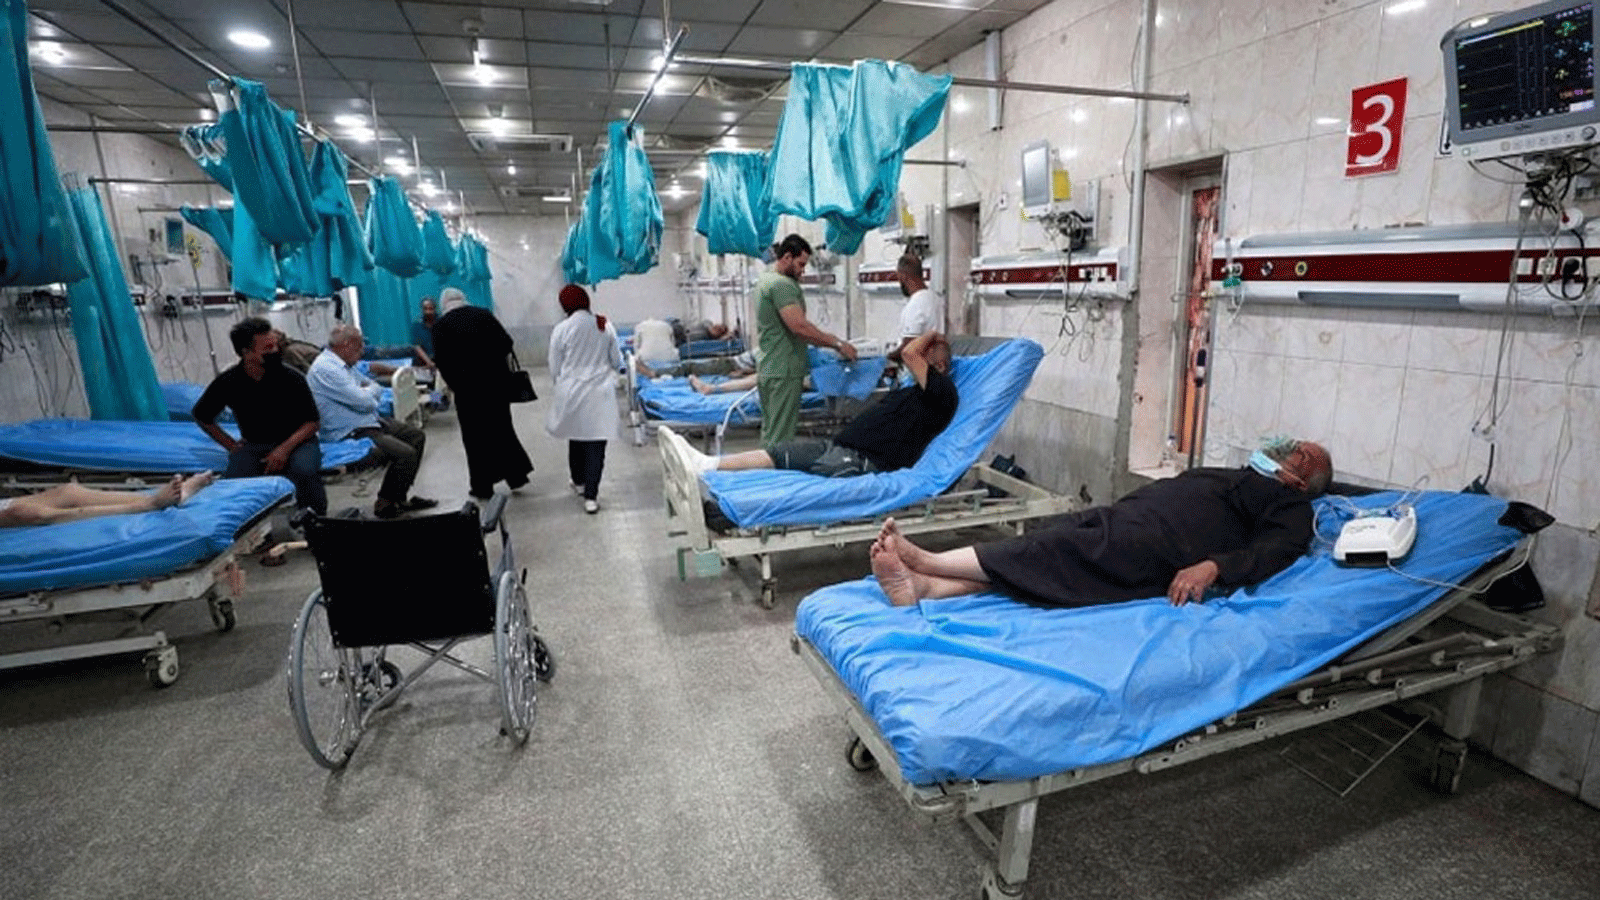 مصابون عراقيون بمرض الكوليرا يعالجون في إحدى مستشفيات بغداد (الصحة)